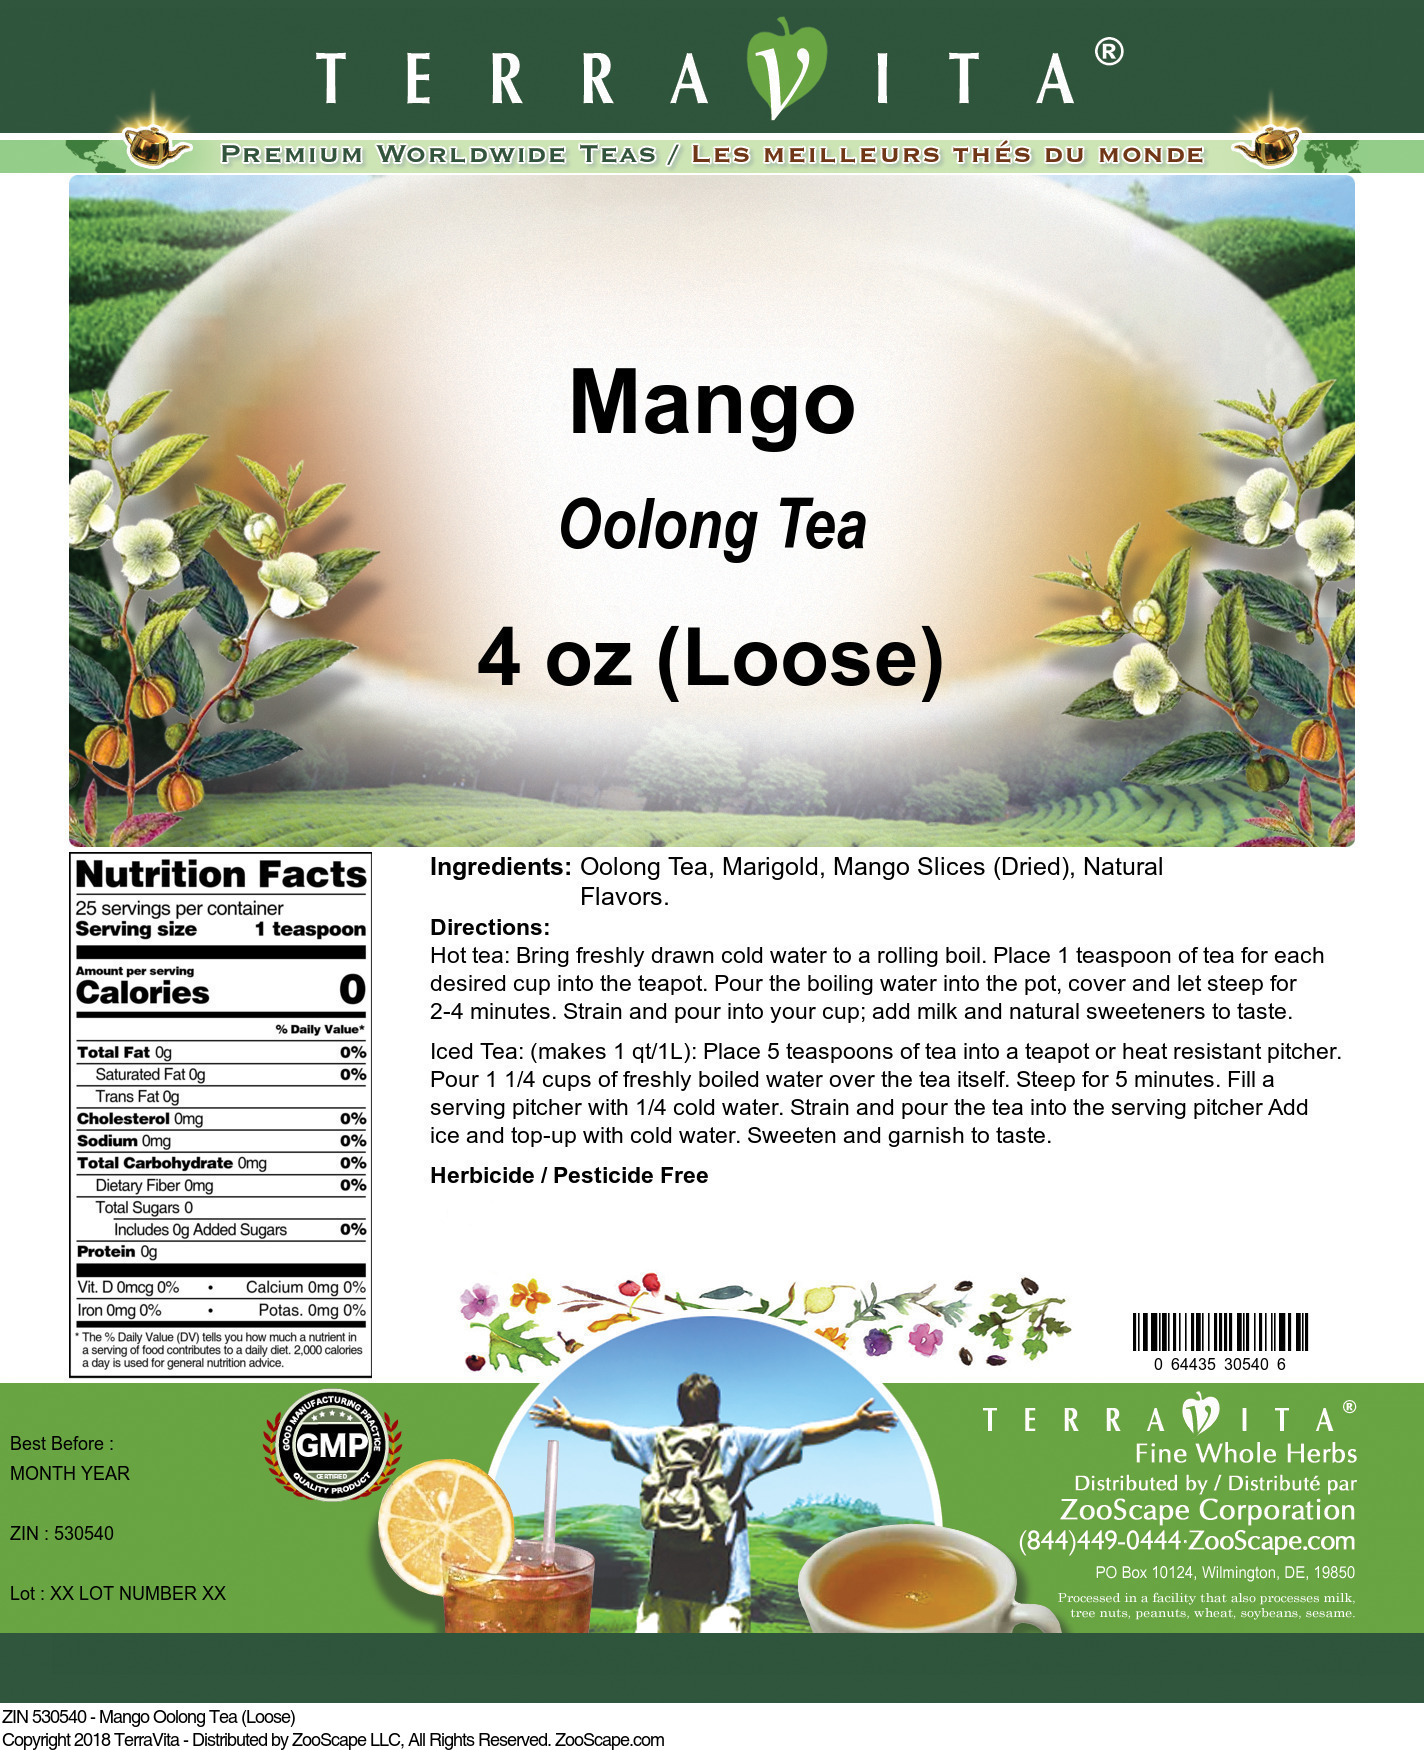 Mango Oolong Tea (Loose) - Label